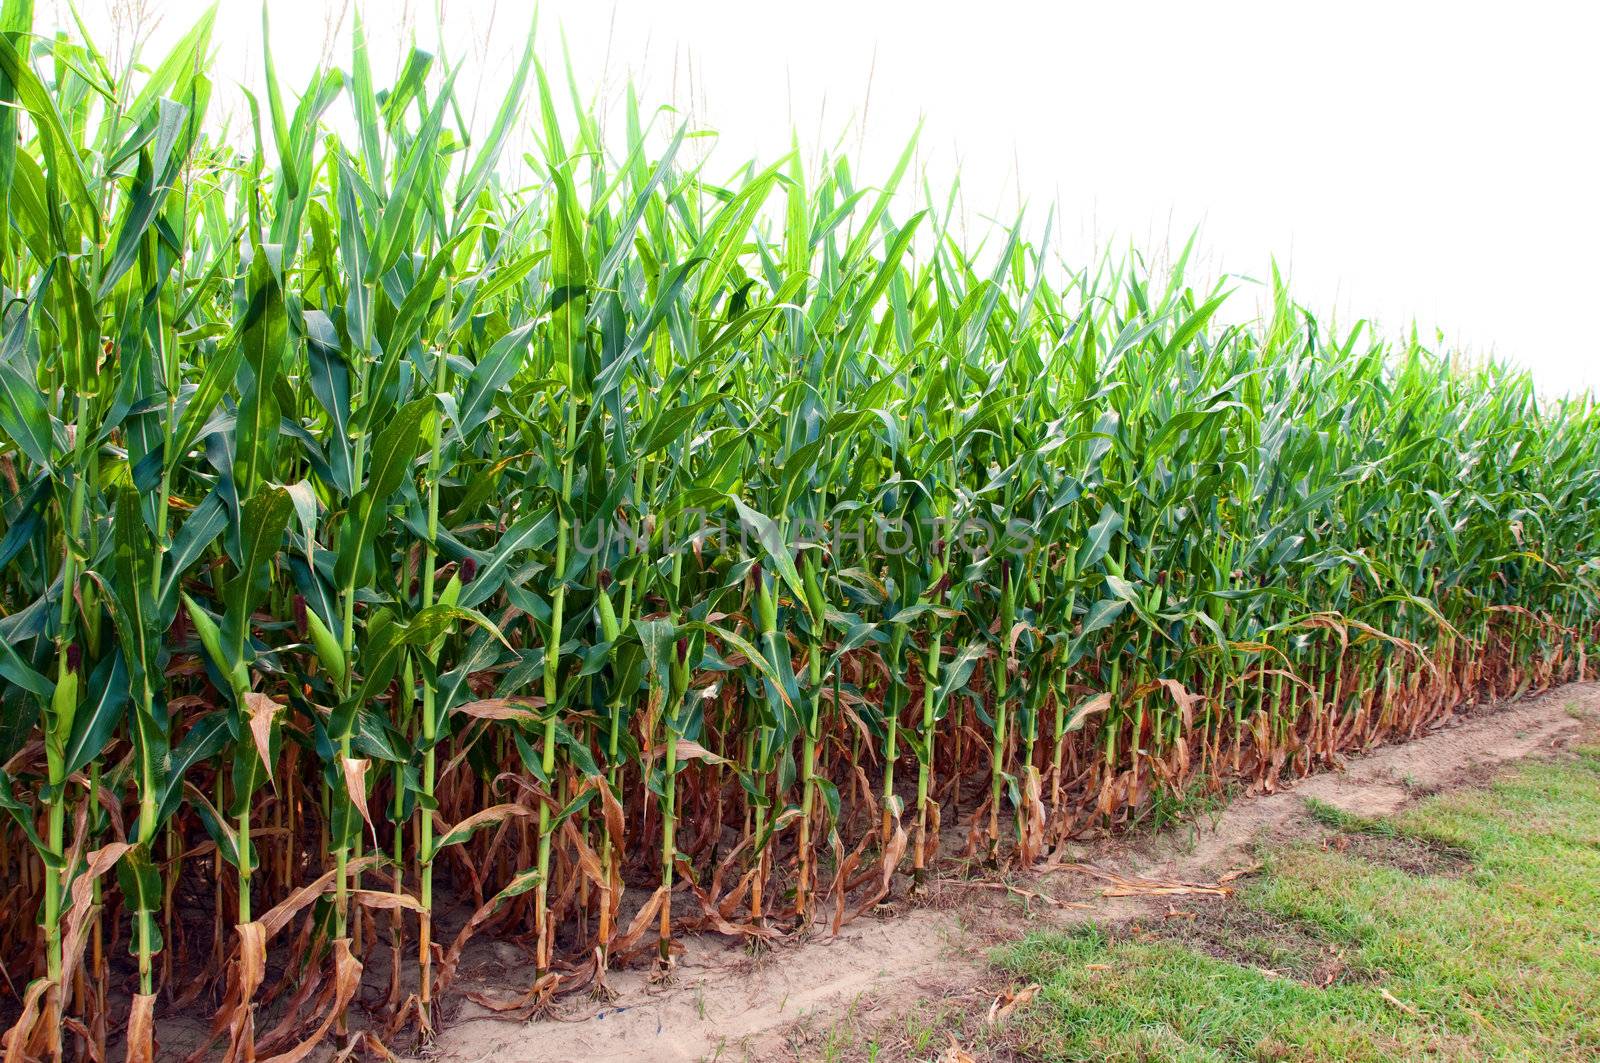 Corn Field in Alabama by dehooks